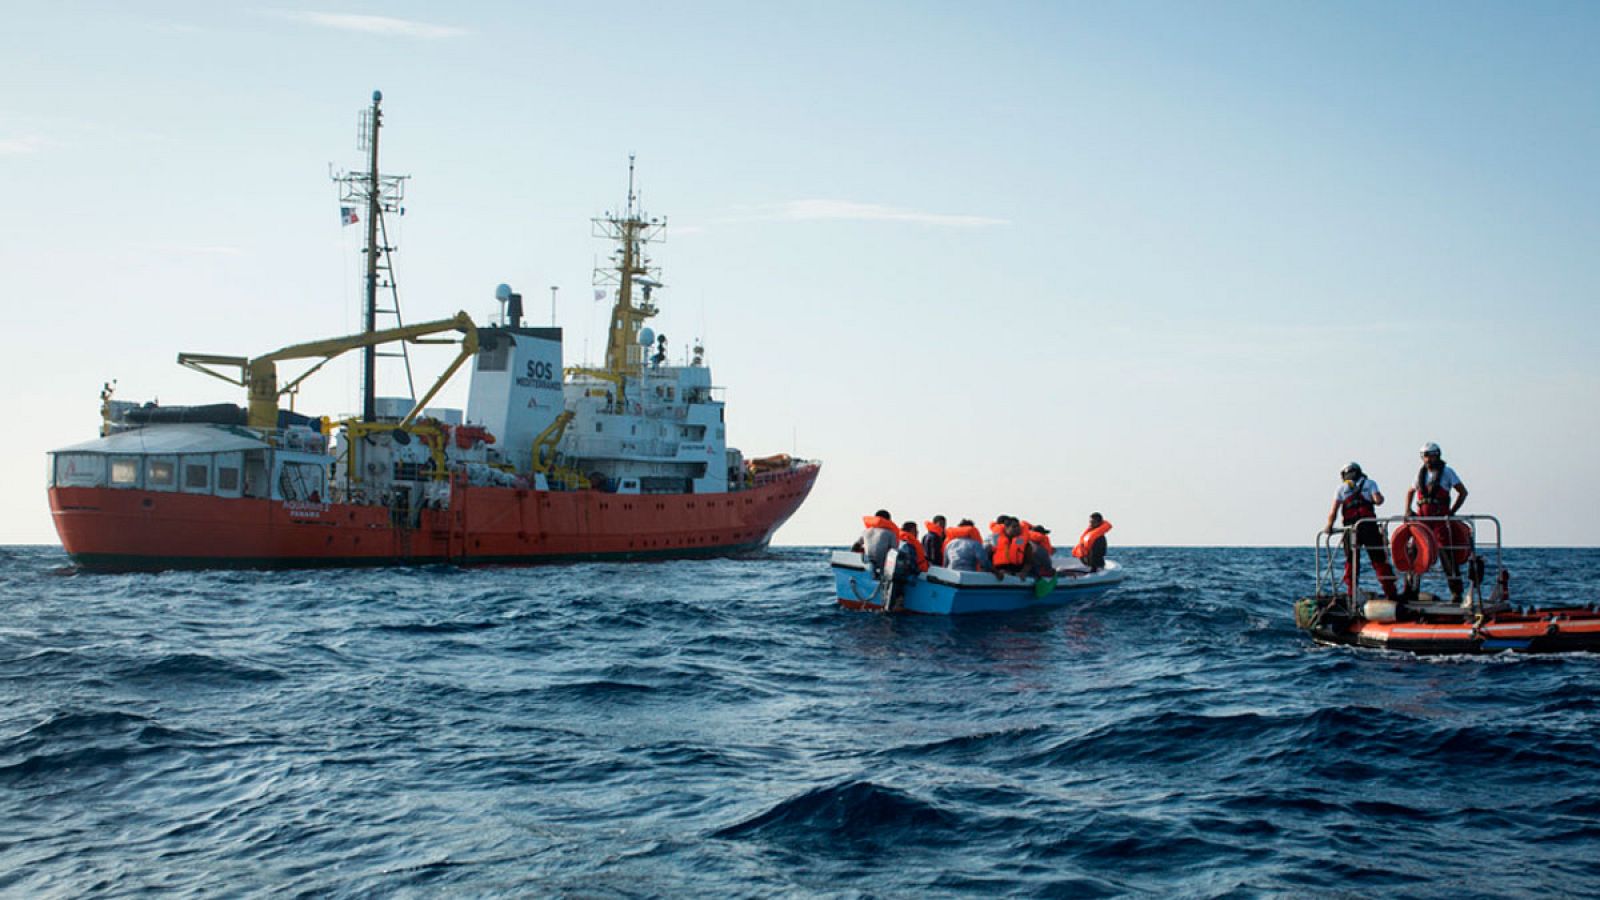 Rescate de migrantes por el buque Aquarius en el Mediterráneo